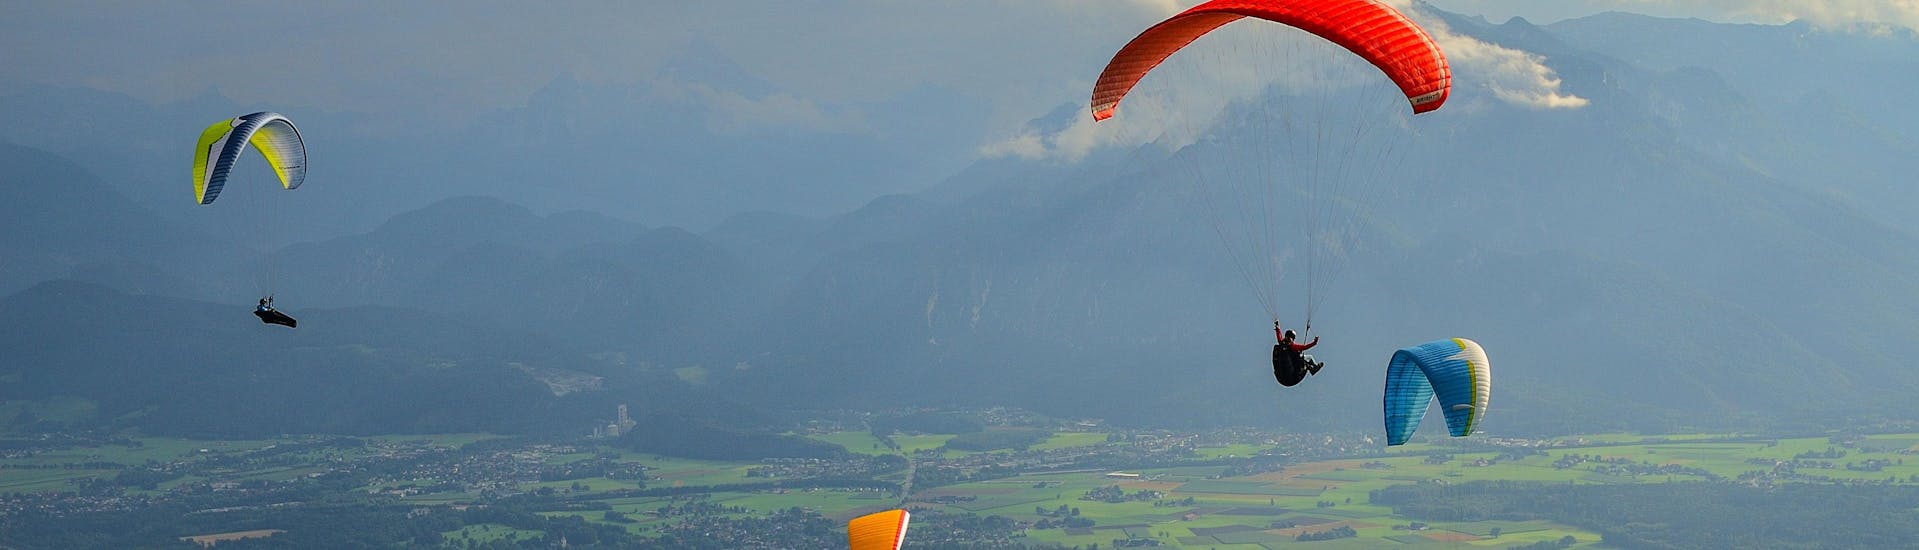 Un uomo sta facendo un volo in parapendio biposto nell'hotspot di parapendio presso Salisburgo.